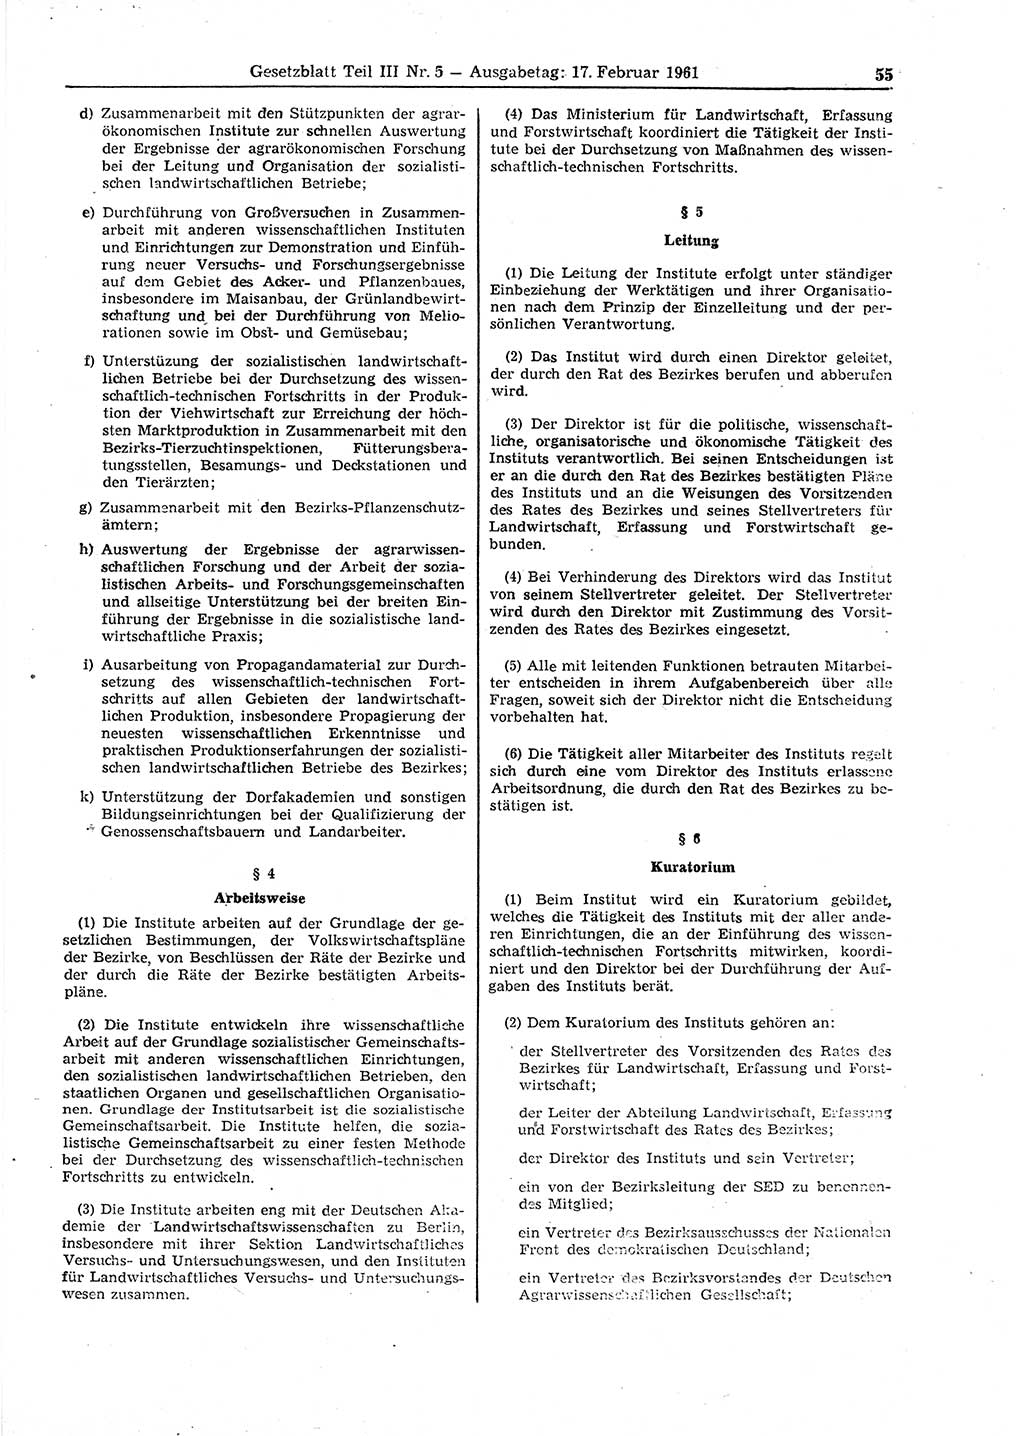 Gesetzblatt (GBl.) der Deutschen Demokratischen Republik (DDR) Teil ⅠⅠⅠ 1961, Seite 55 (GBl. DDR ⅠⅠⅠ 1961, S. 55)